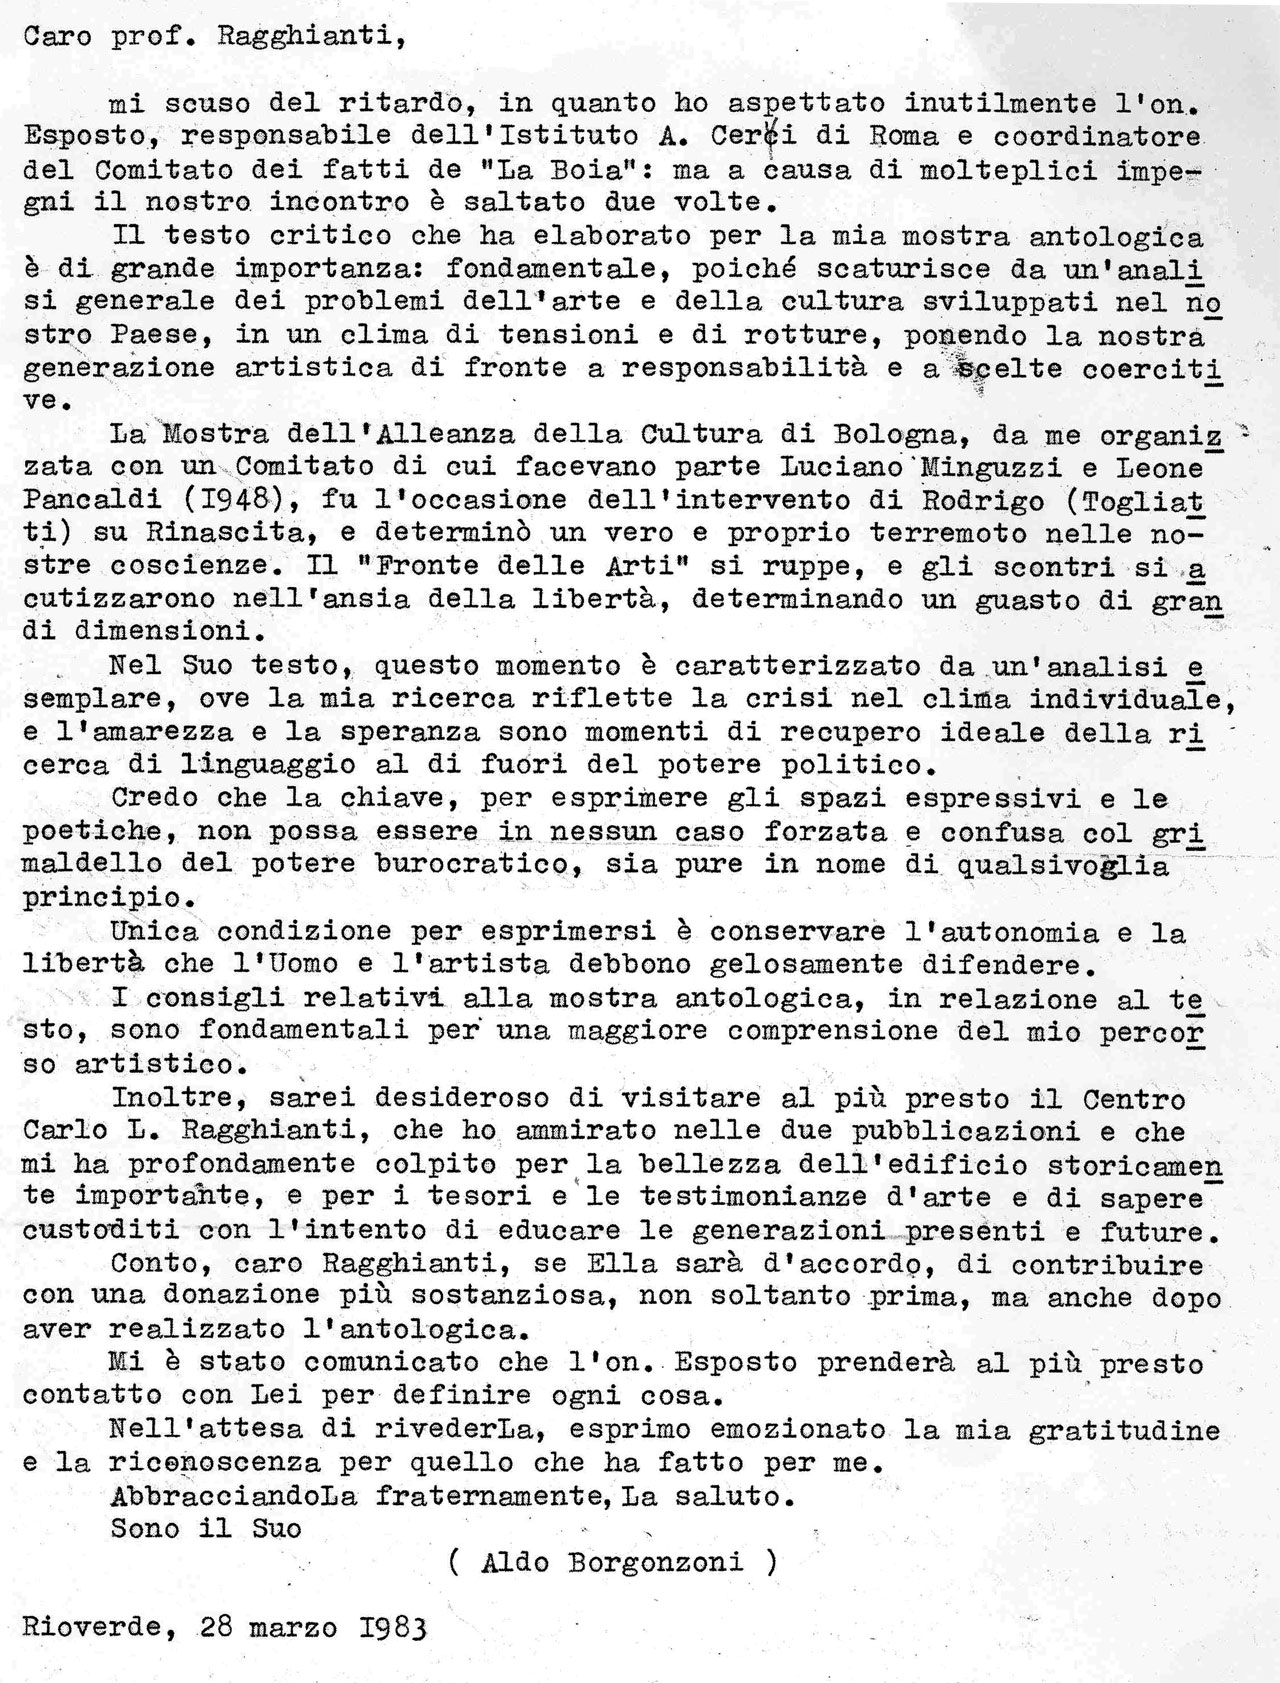 Da A. Borgonzoni a C.L. Ragghianti, 28 giugno 1983, lettera dattiloscritta